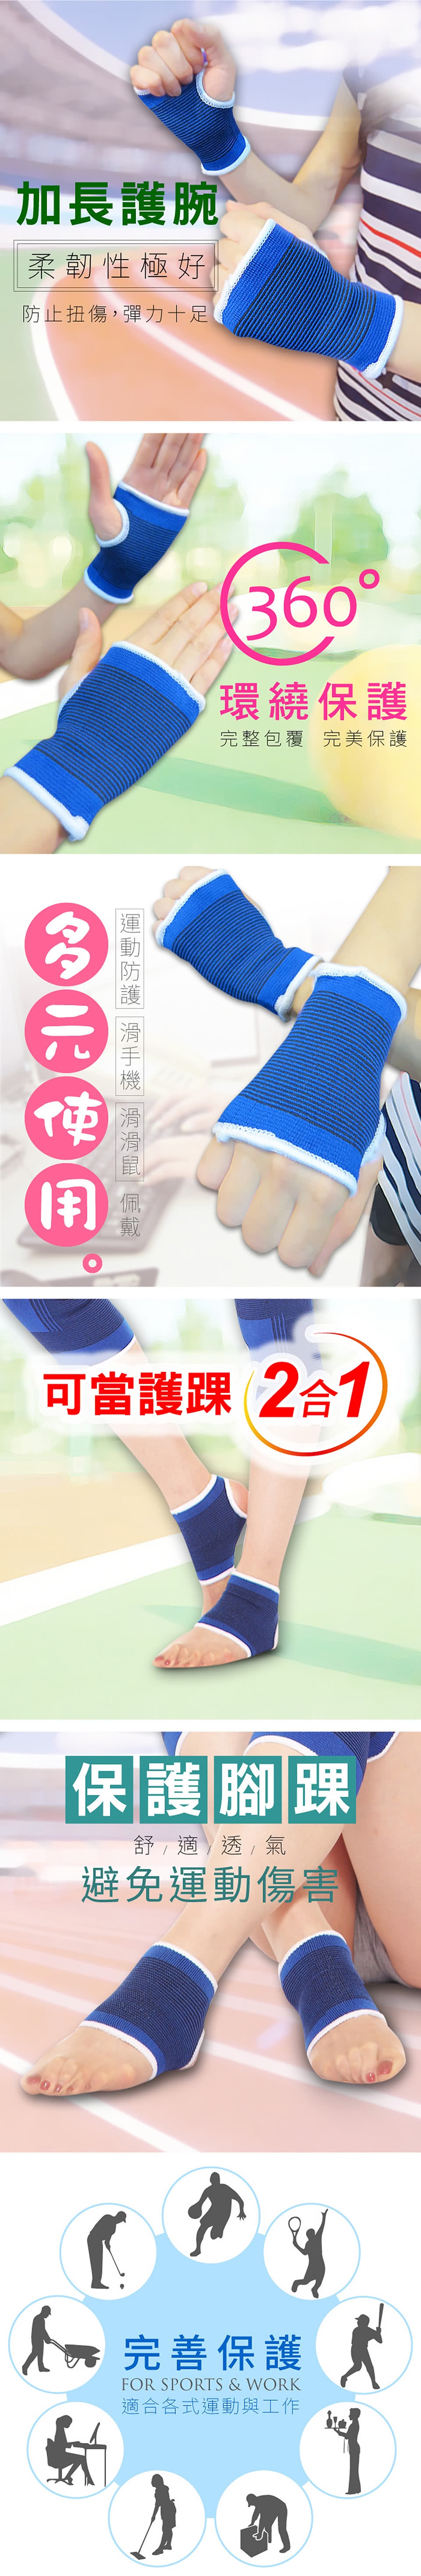 【Yi-sheng】*隱形達人*隱形版護腰回饋組(774腰帶+藍膝藍腕)